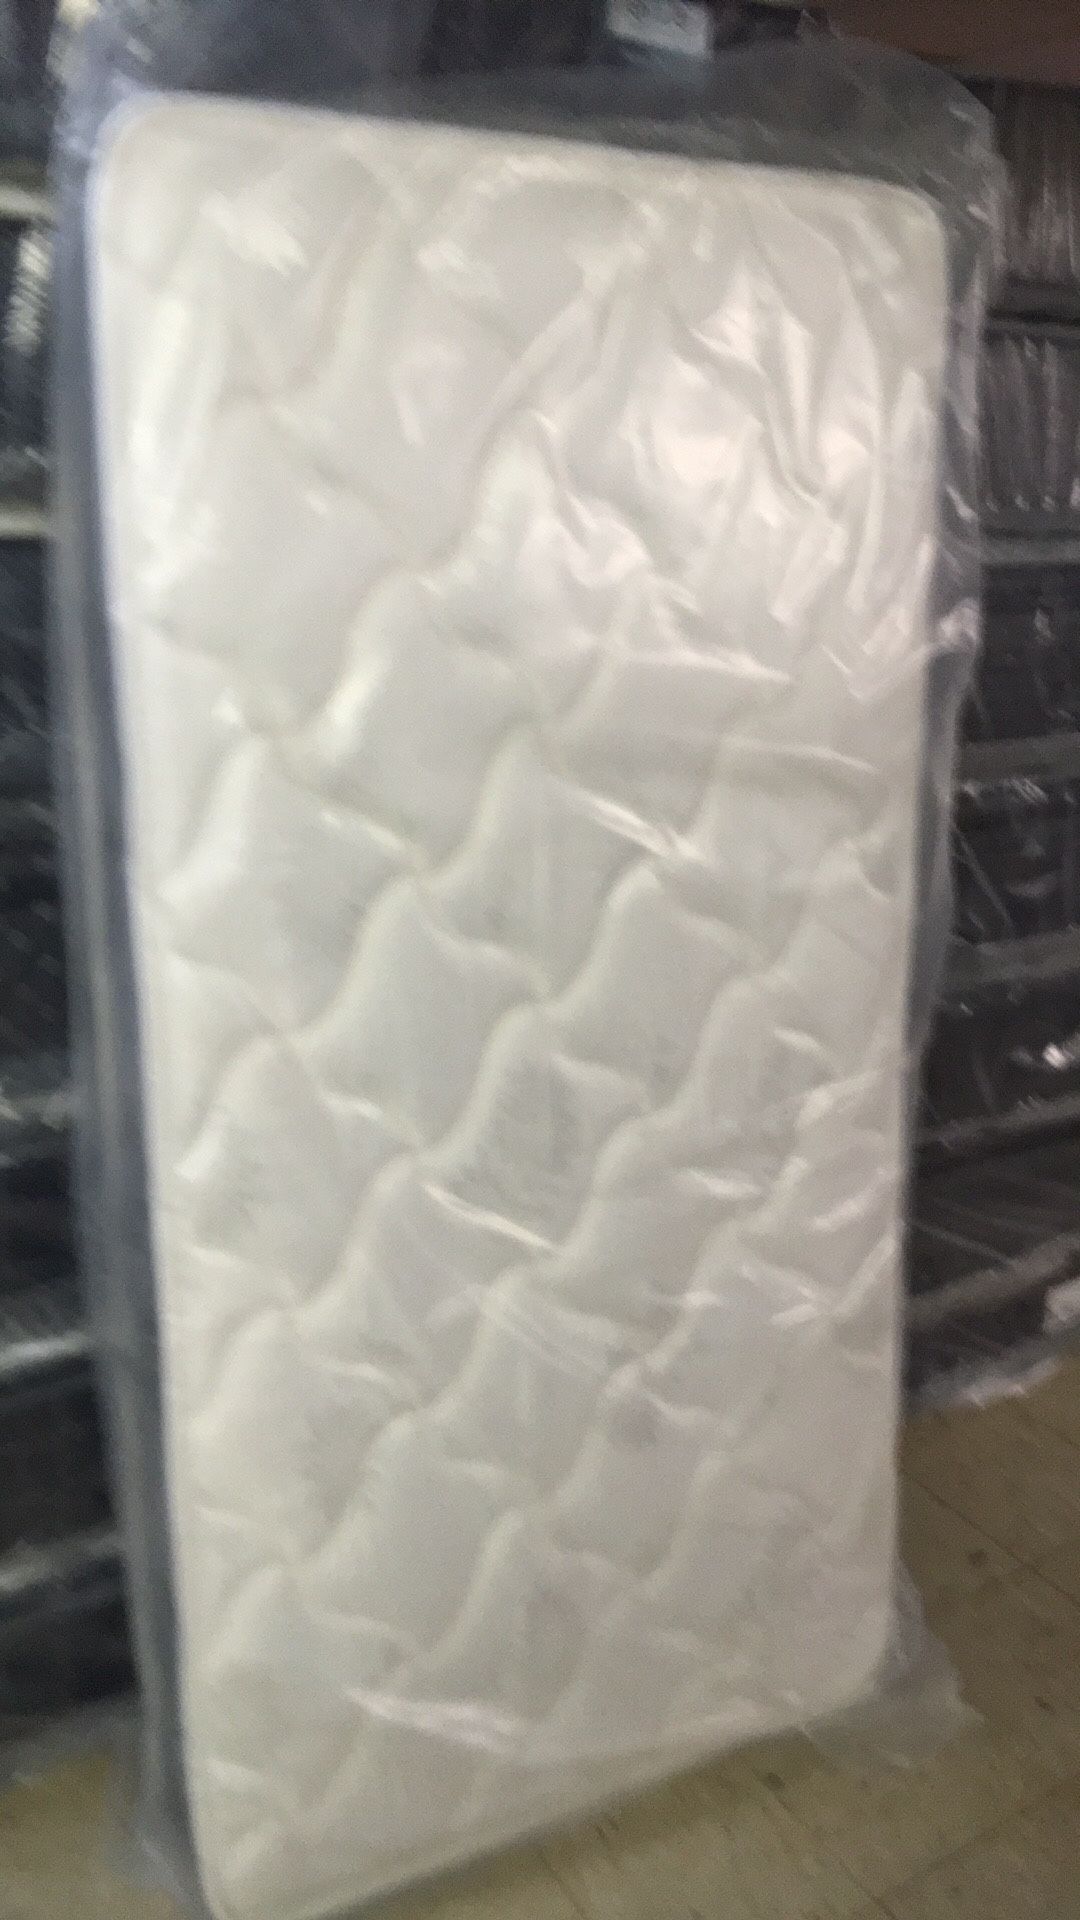 Brand new plush twin size mattress